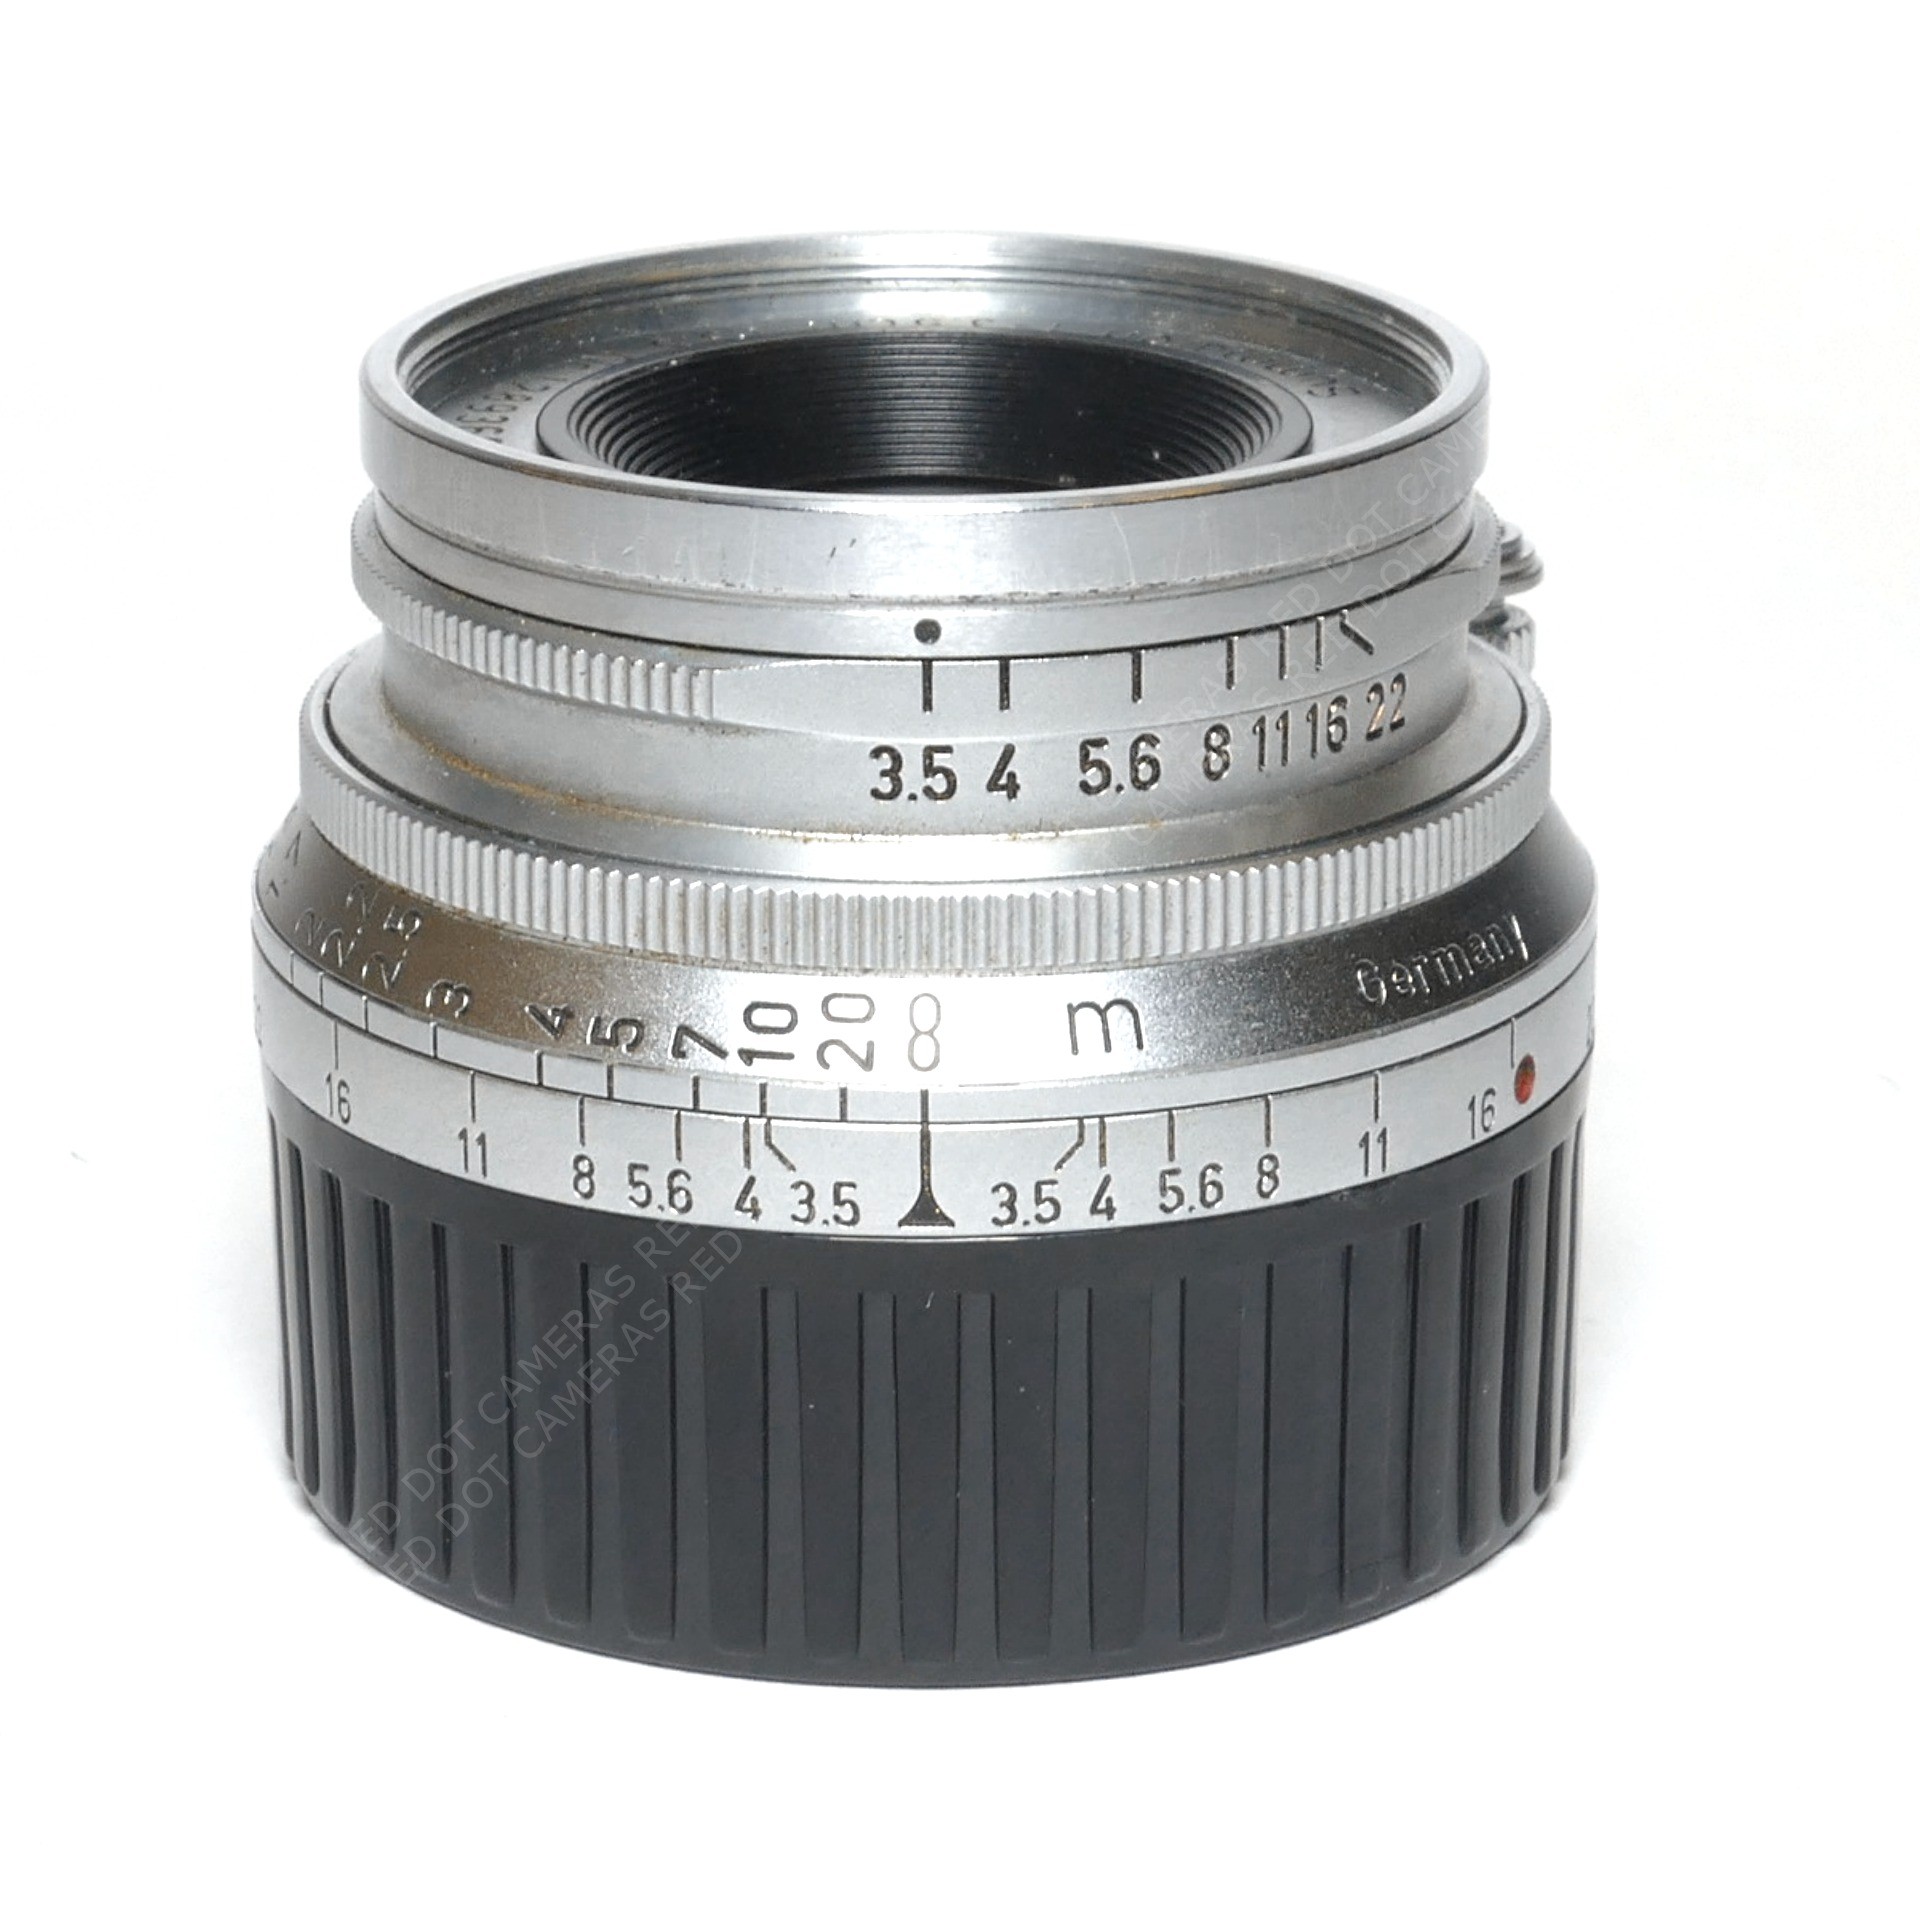 極上】Leitz summaron 35mm f3.5 Lマウント - レンズ(単焦点)